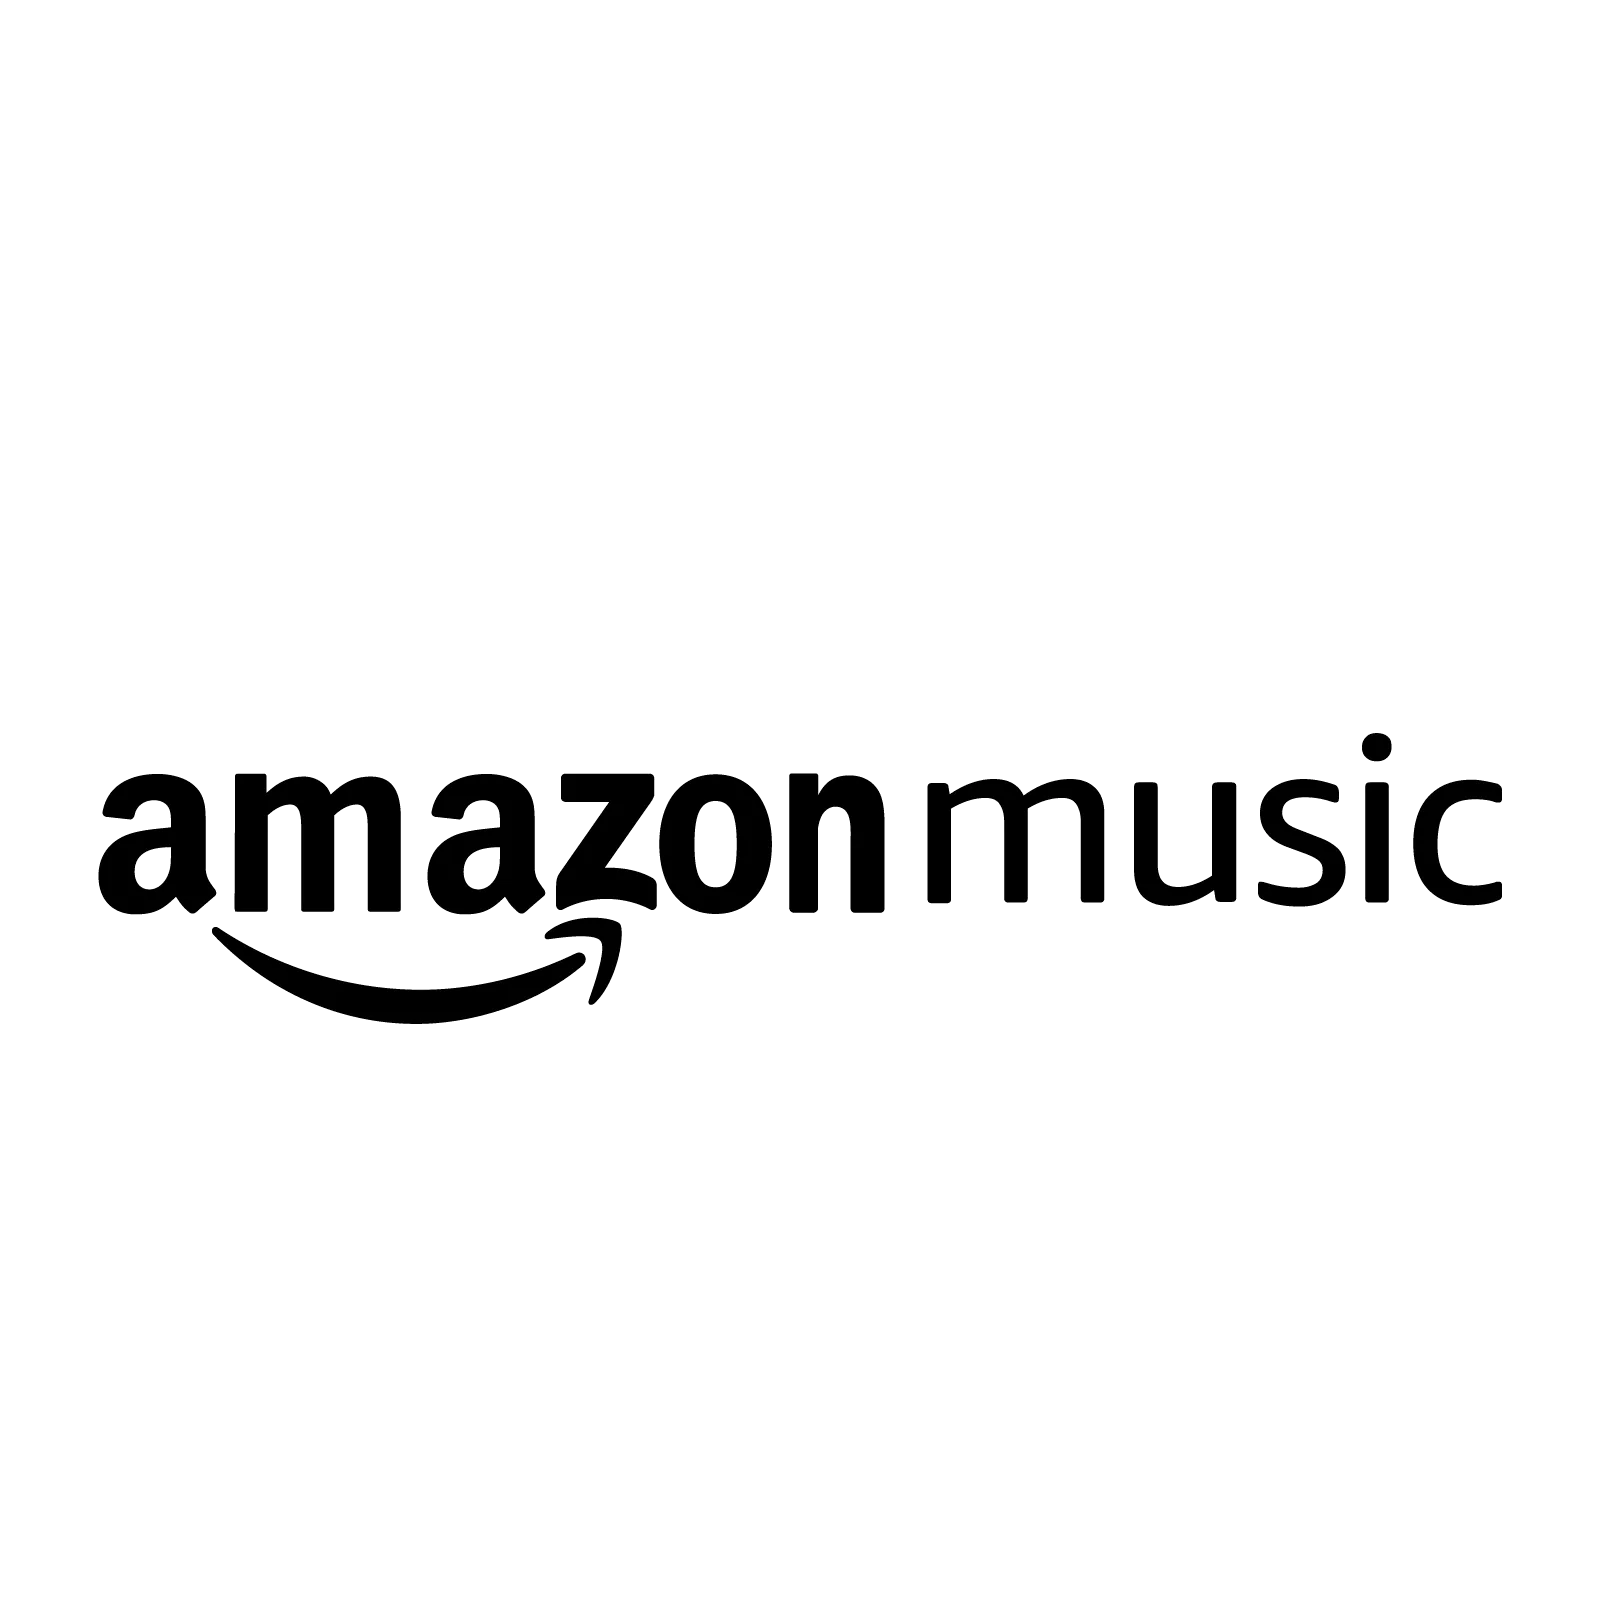 File:Amazon music logo.svg - Wikipedia